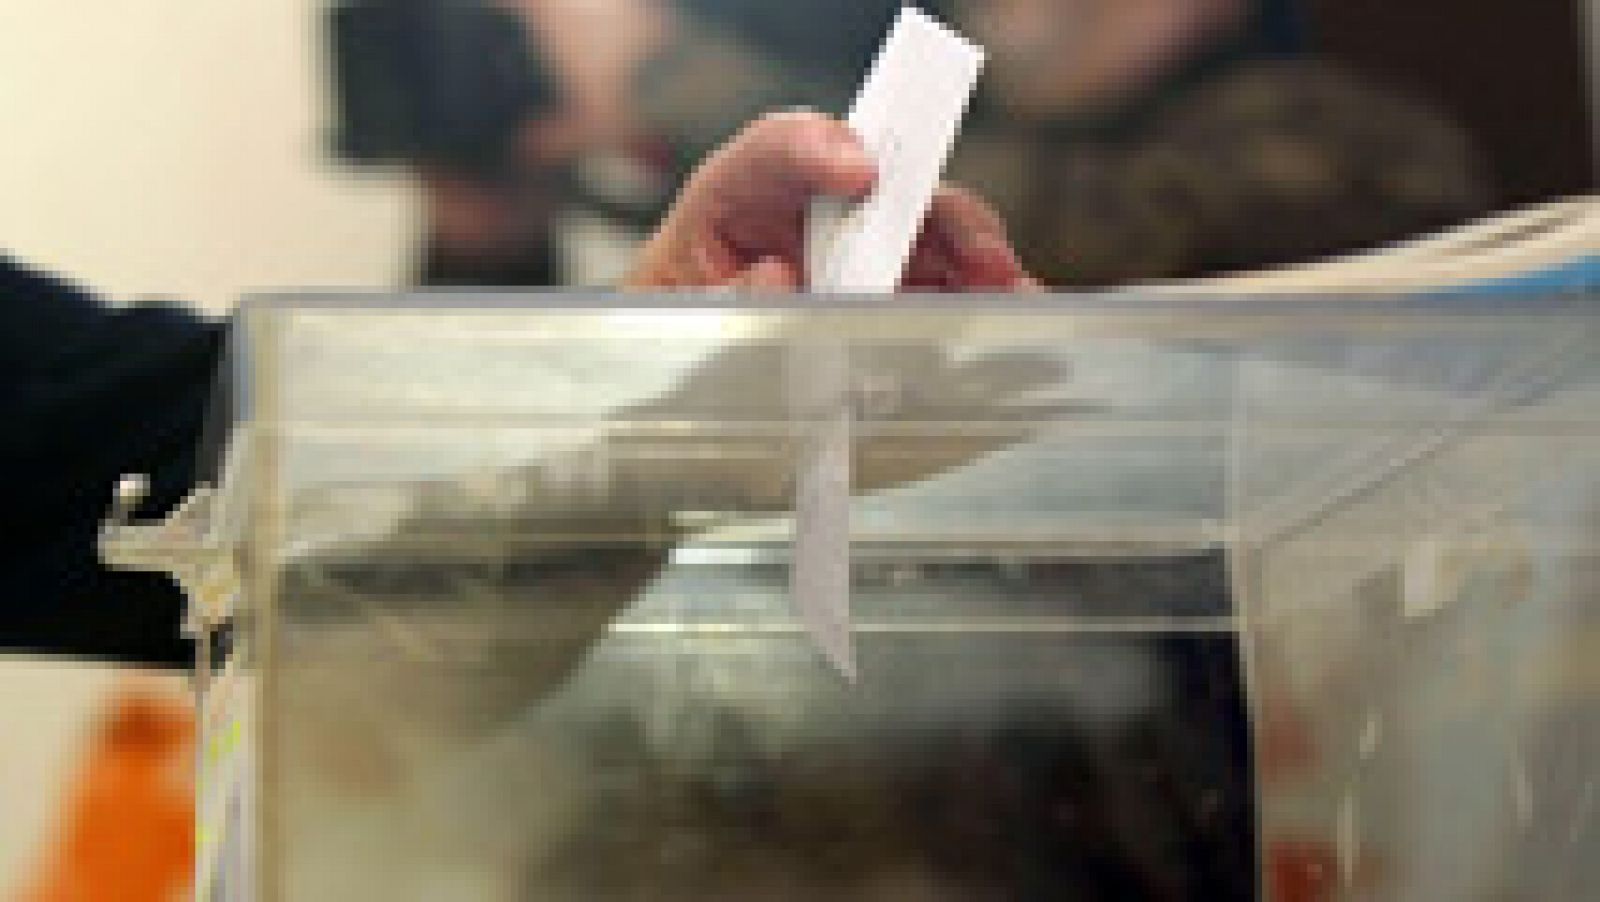 Elecciones gallegas 2016 | Unos 2,7 millones de gallegos votan en las elecciones autonómicas del 25S